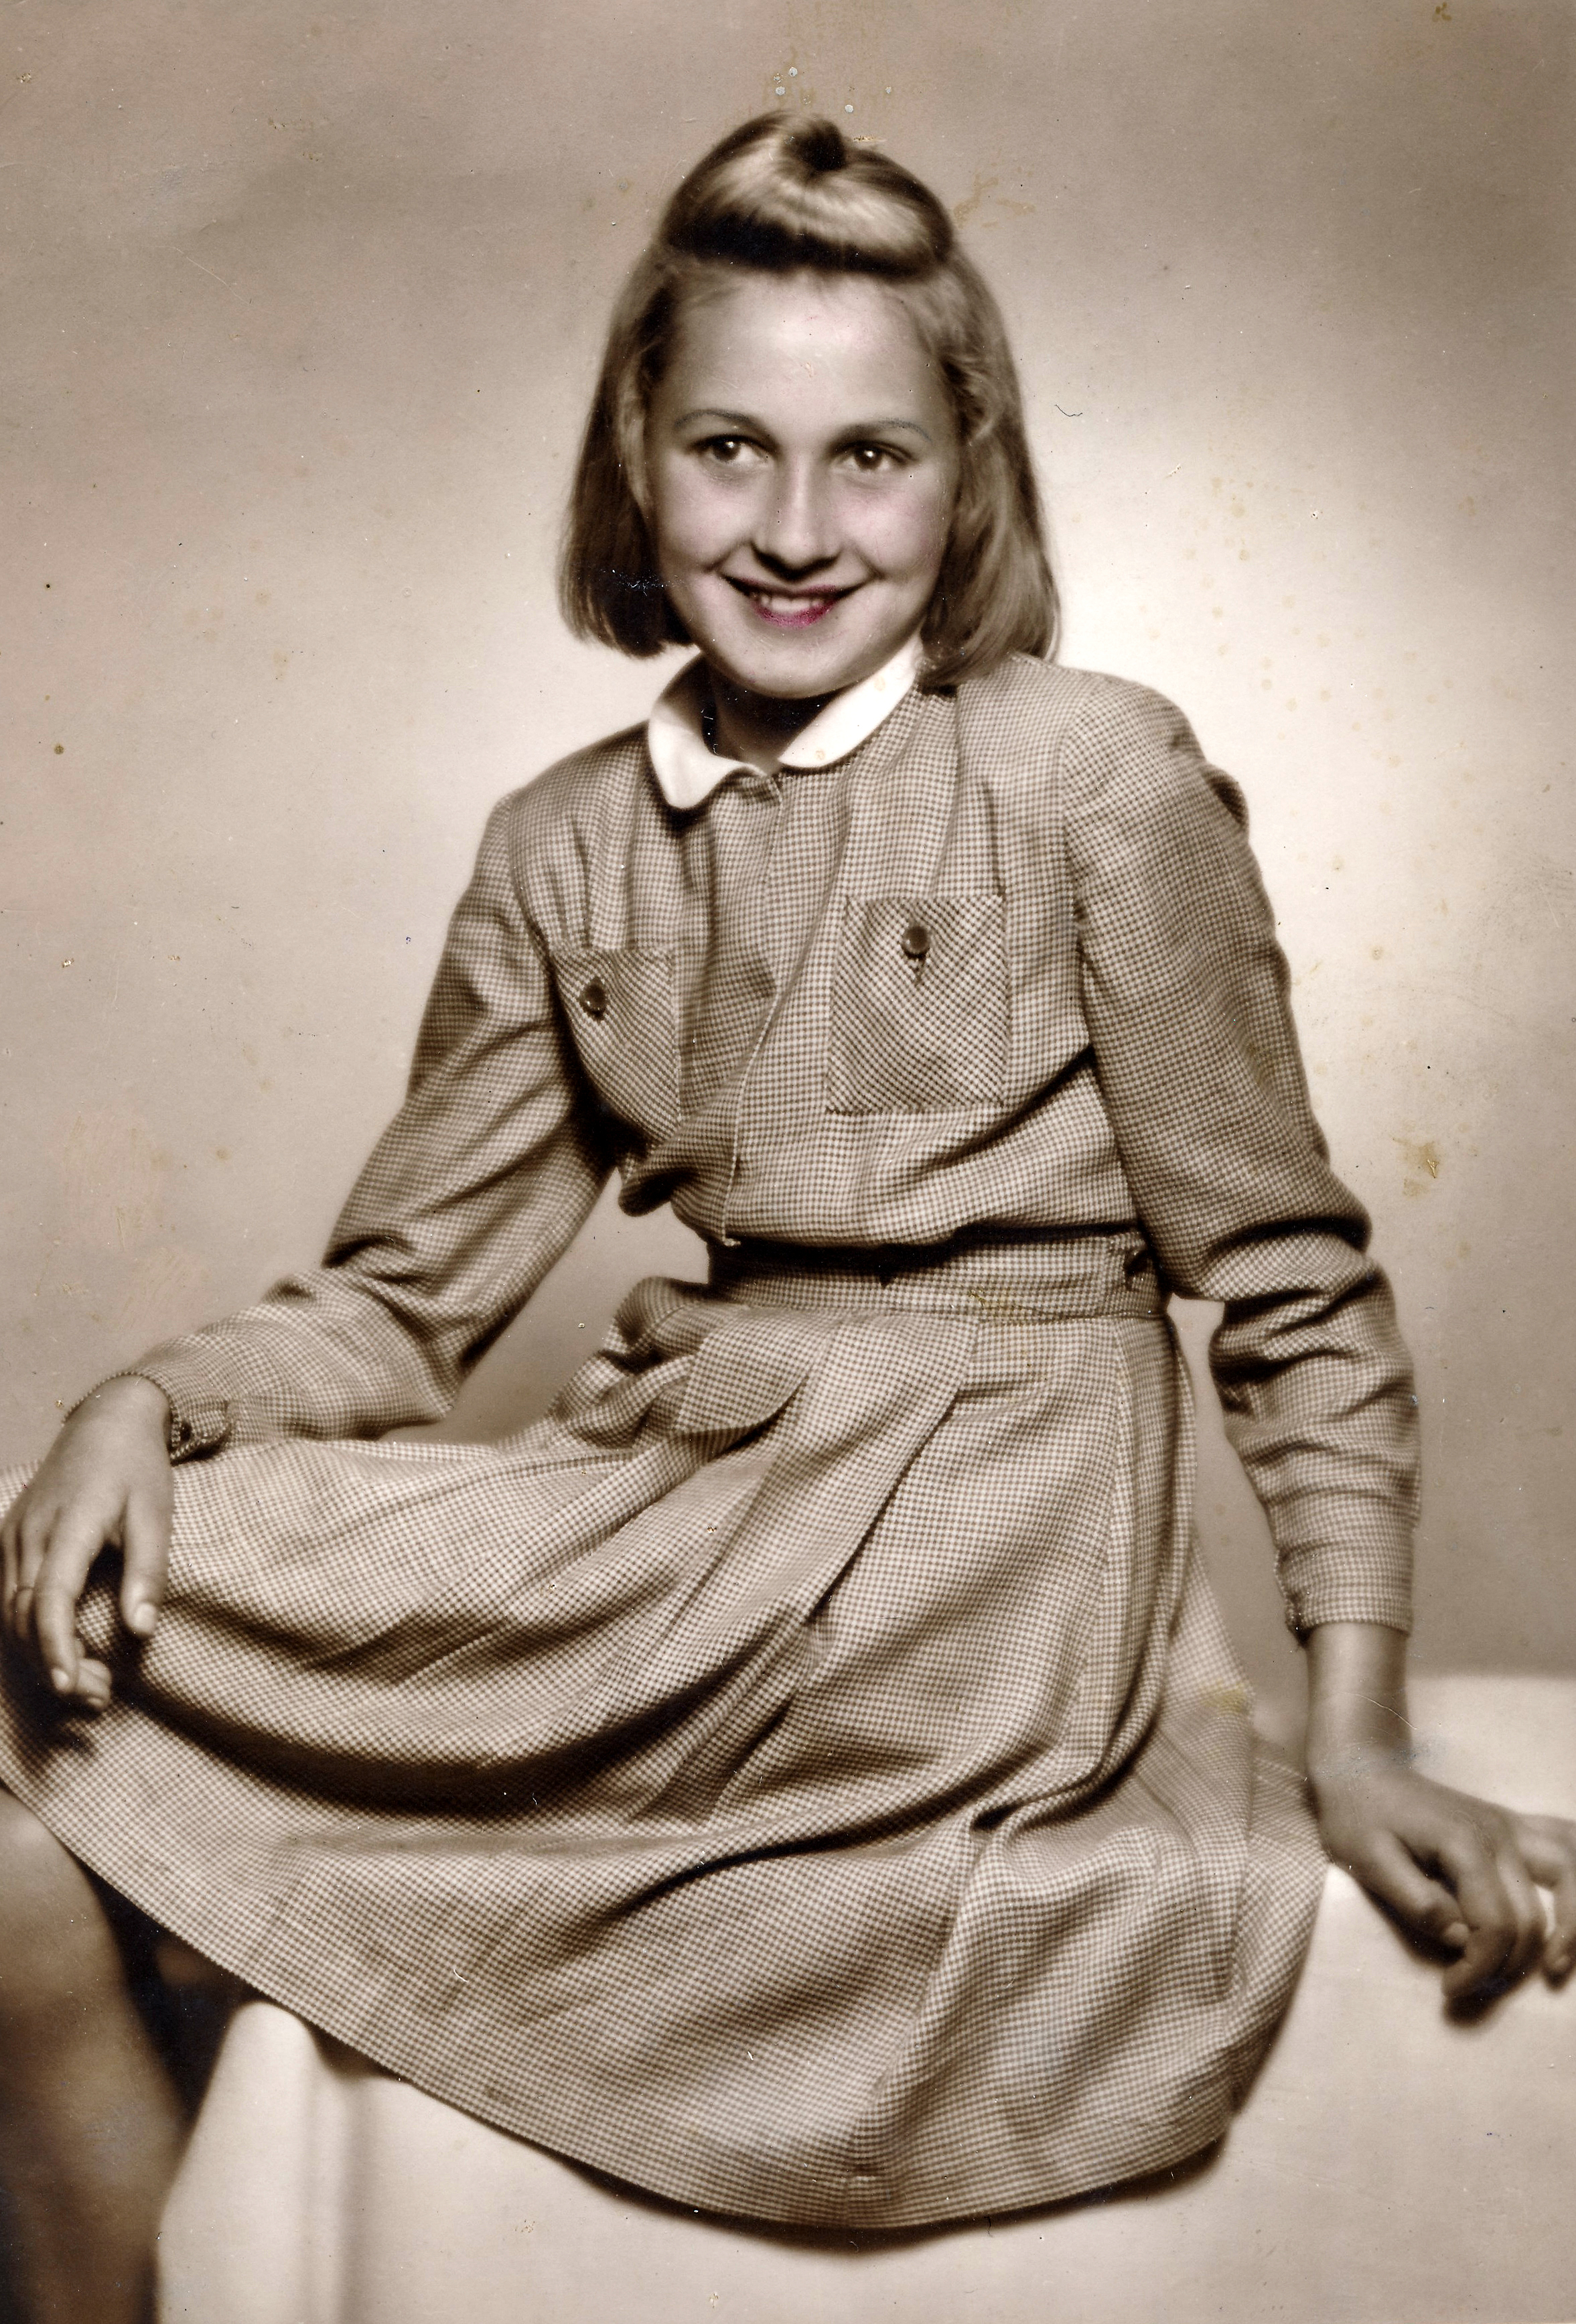 Irena Musilová, back then Culková